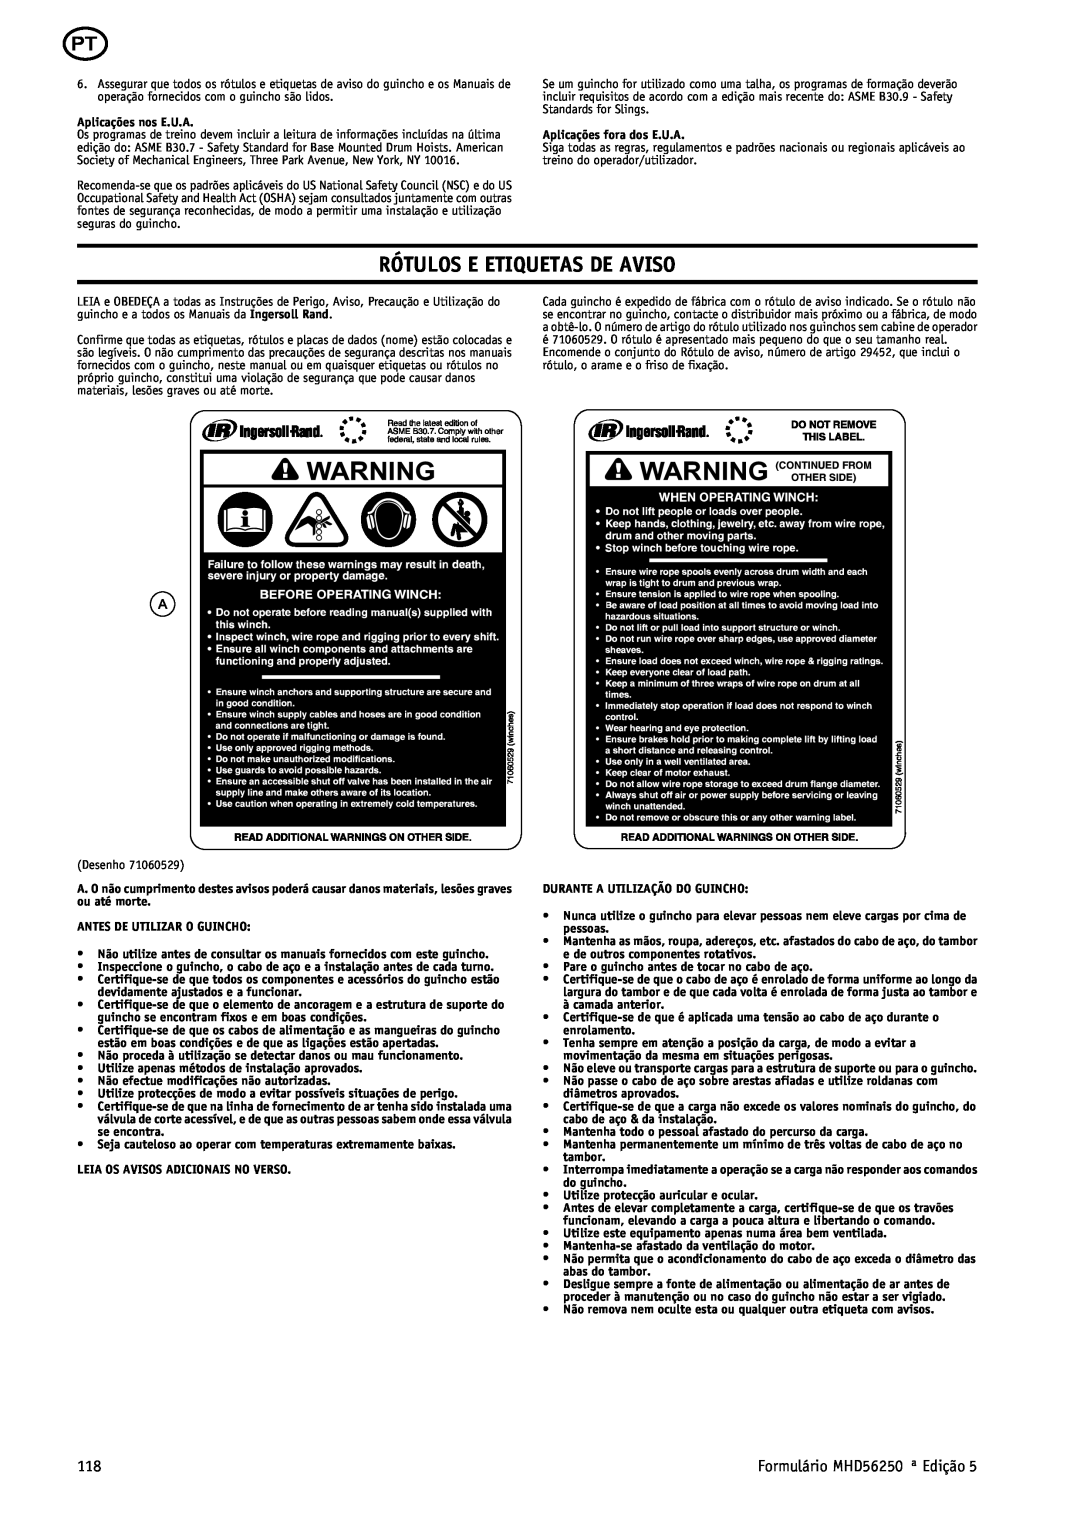 Ingersoll-Rand manual Rótulos E Etiquetas De Aviso, Formulário MHD56250 ª Edição 